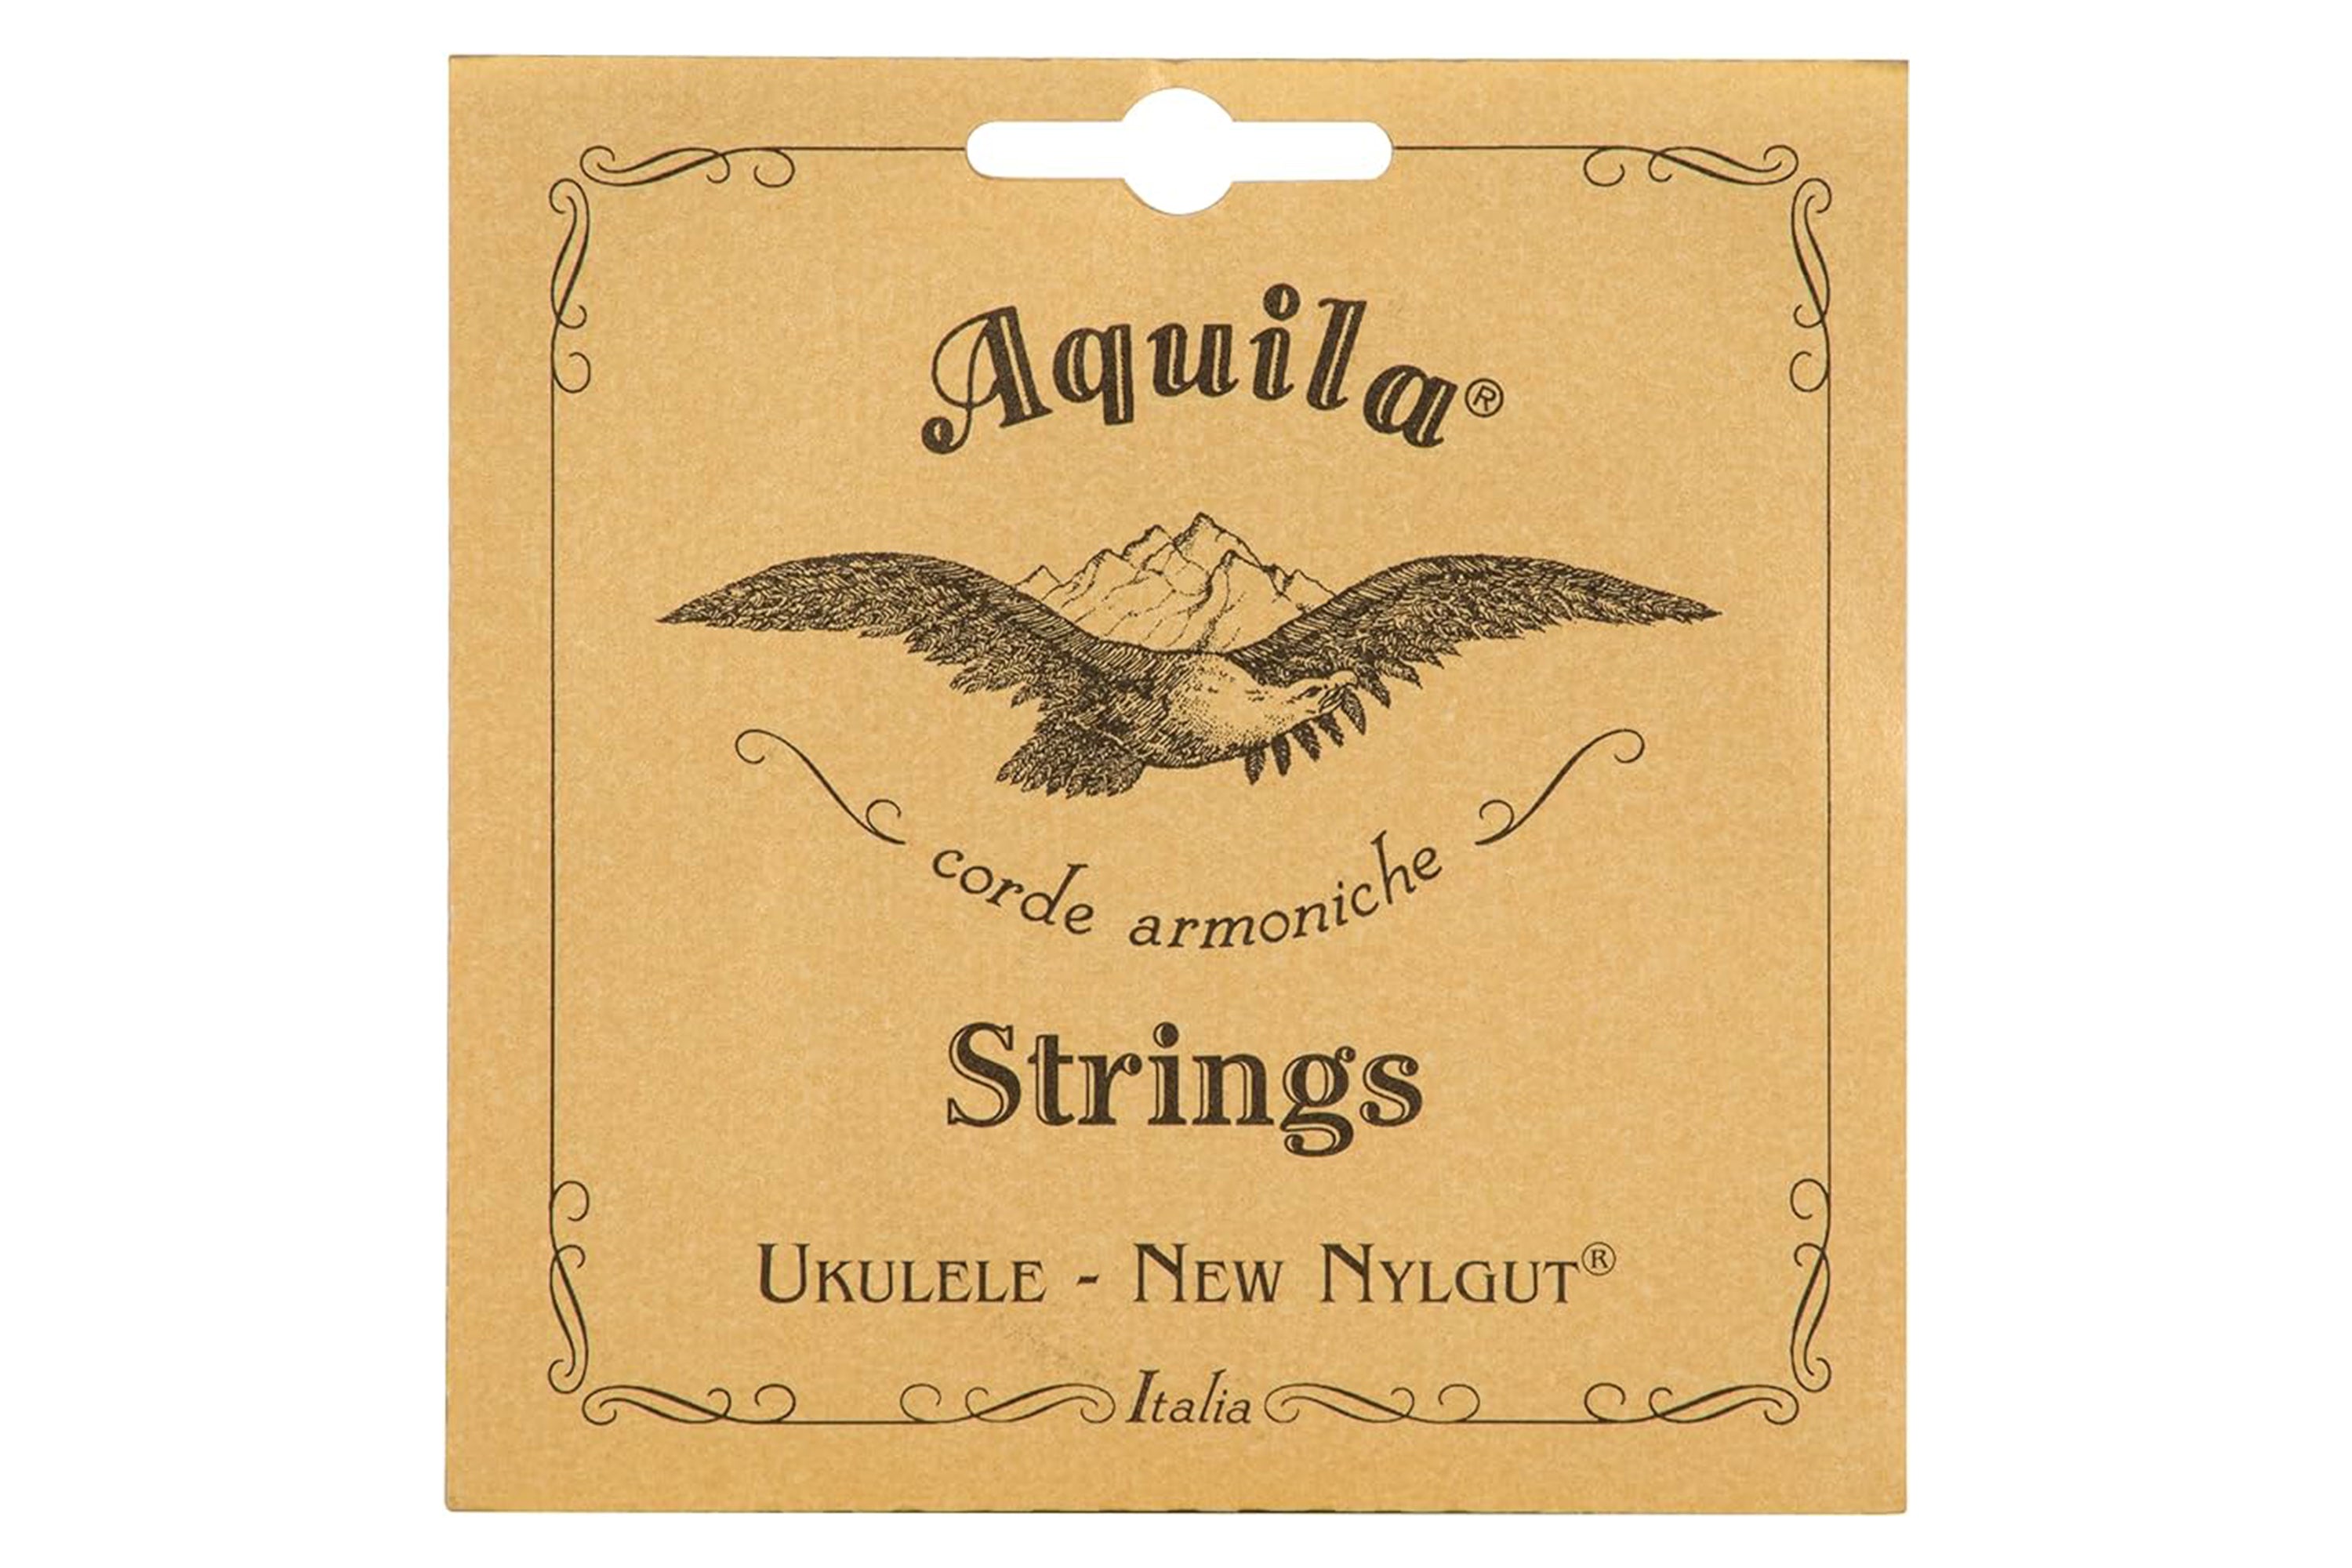 Aquila 26U New Nylgut Baritone 8 String Ukulele Strings Set (dDgGbbee)